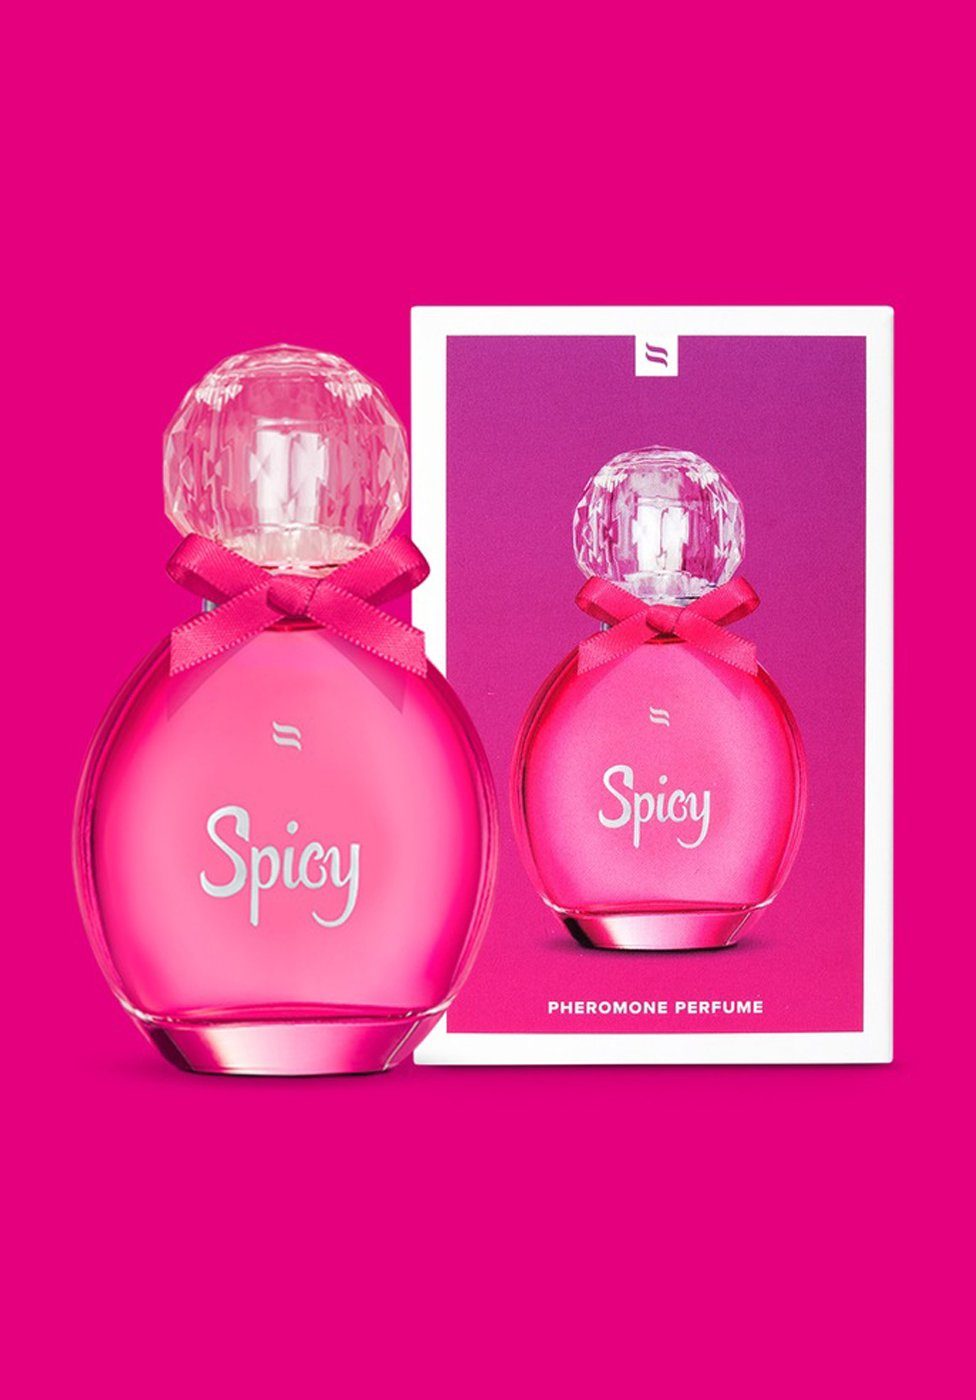 Spicy für die Obsessive mit - Pheromonen Parfum Körperspray Frau